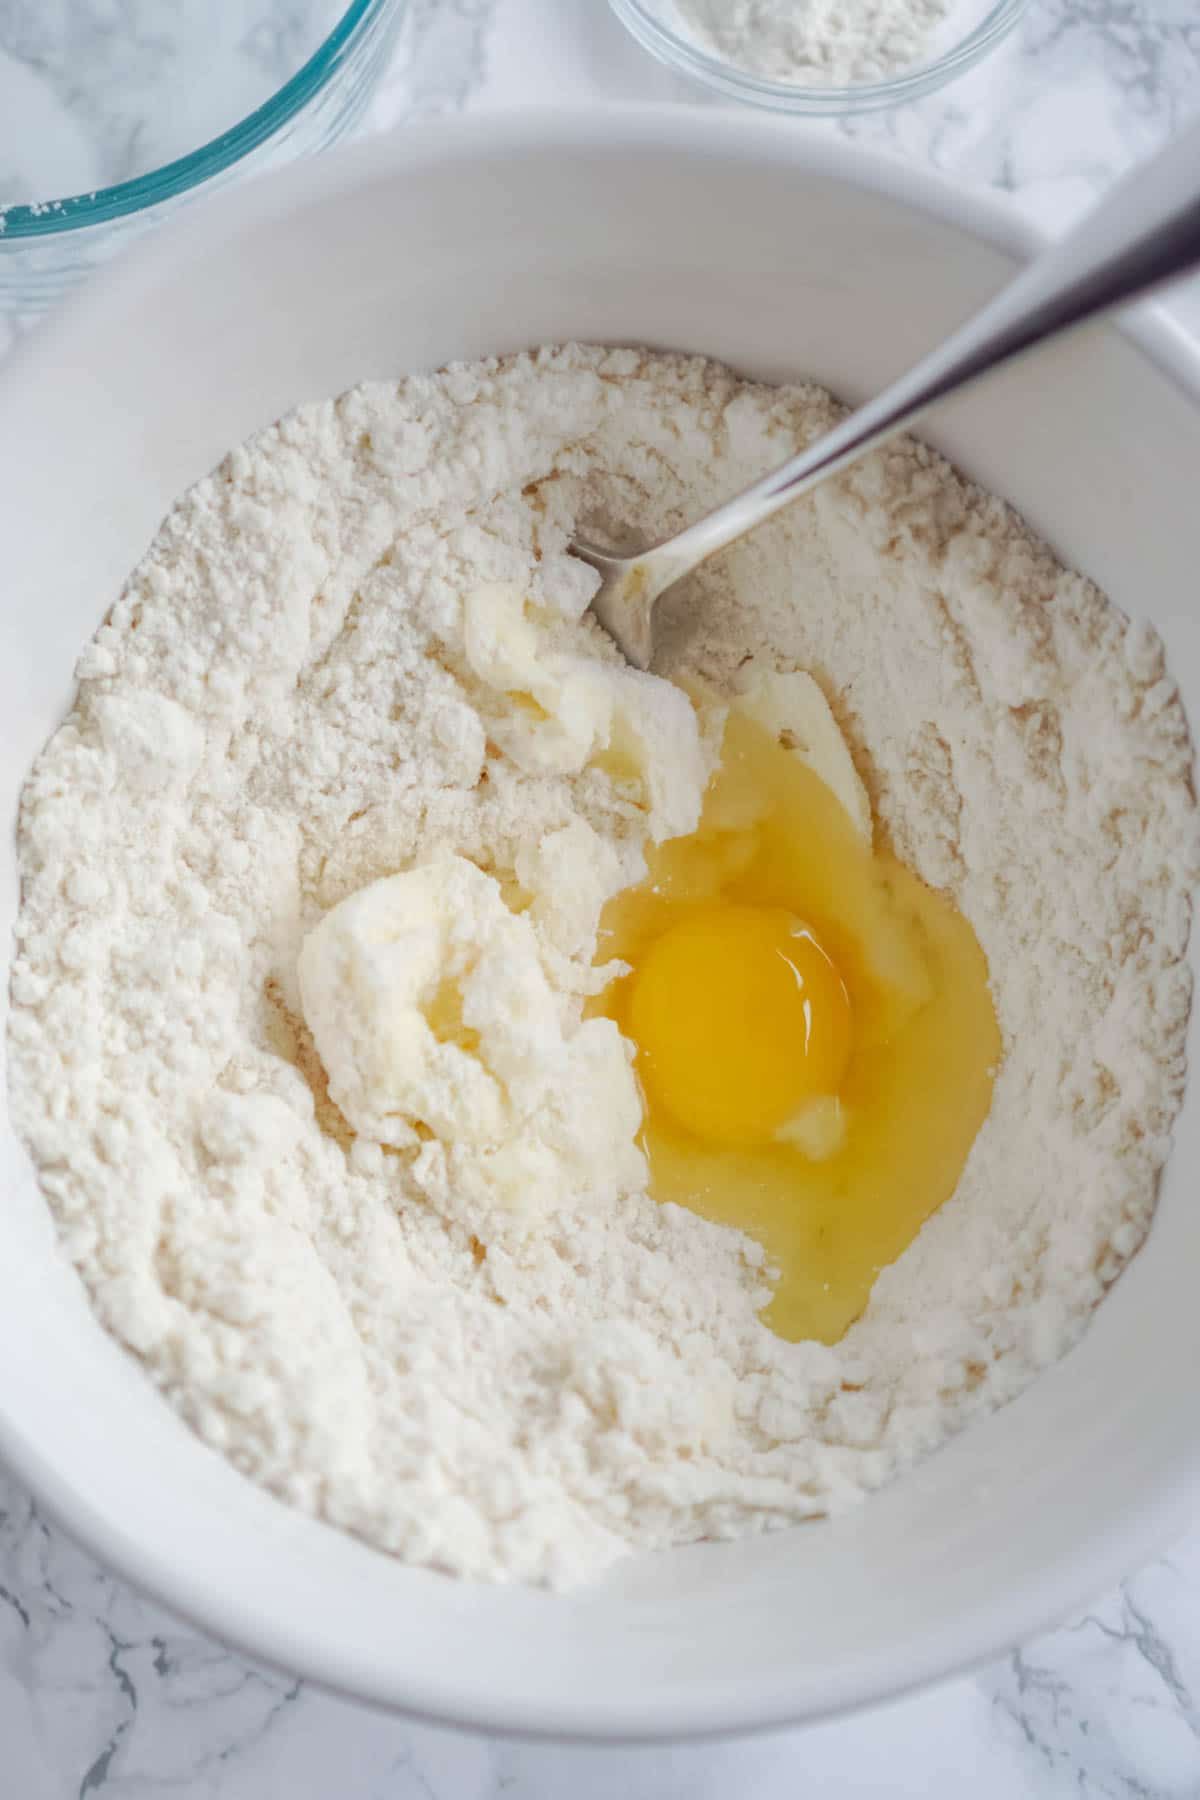 Hvid skål med sukkerkageblanding og et æg i den